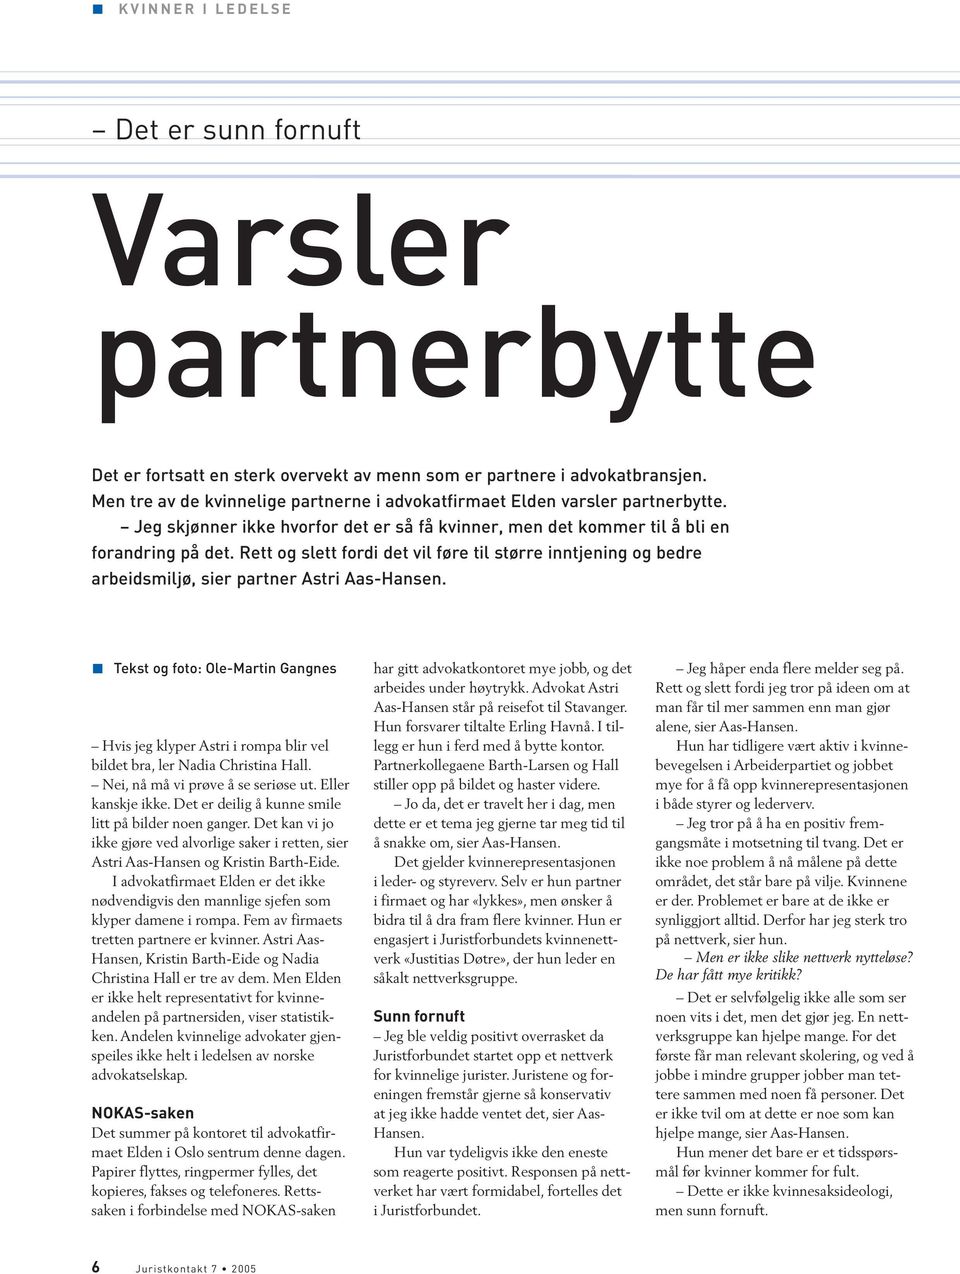 Rett og slett fordi det vil føre til større inntjening og bedre arbeidsmiljø, sier partner Astri Aas-Hansen.